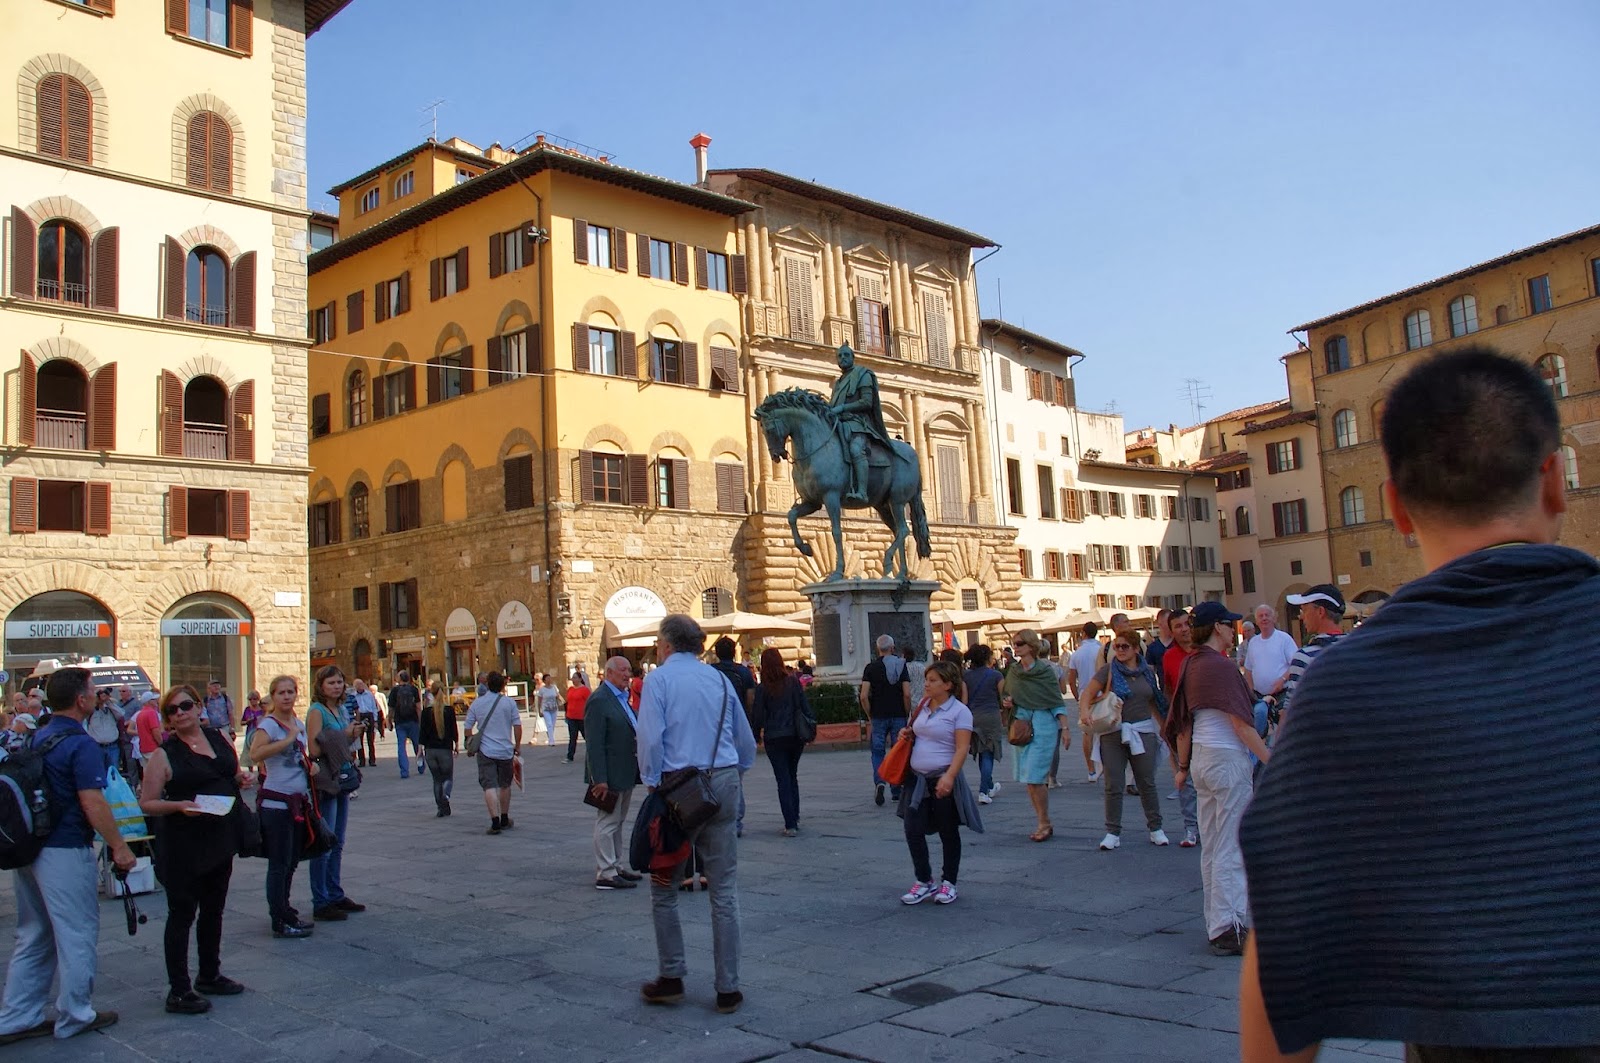 Piazza della Signoria Florencja, Włochy